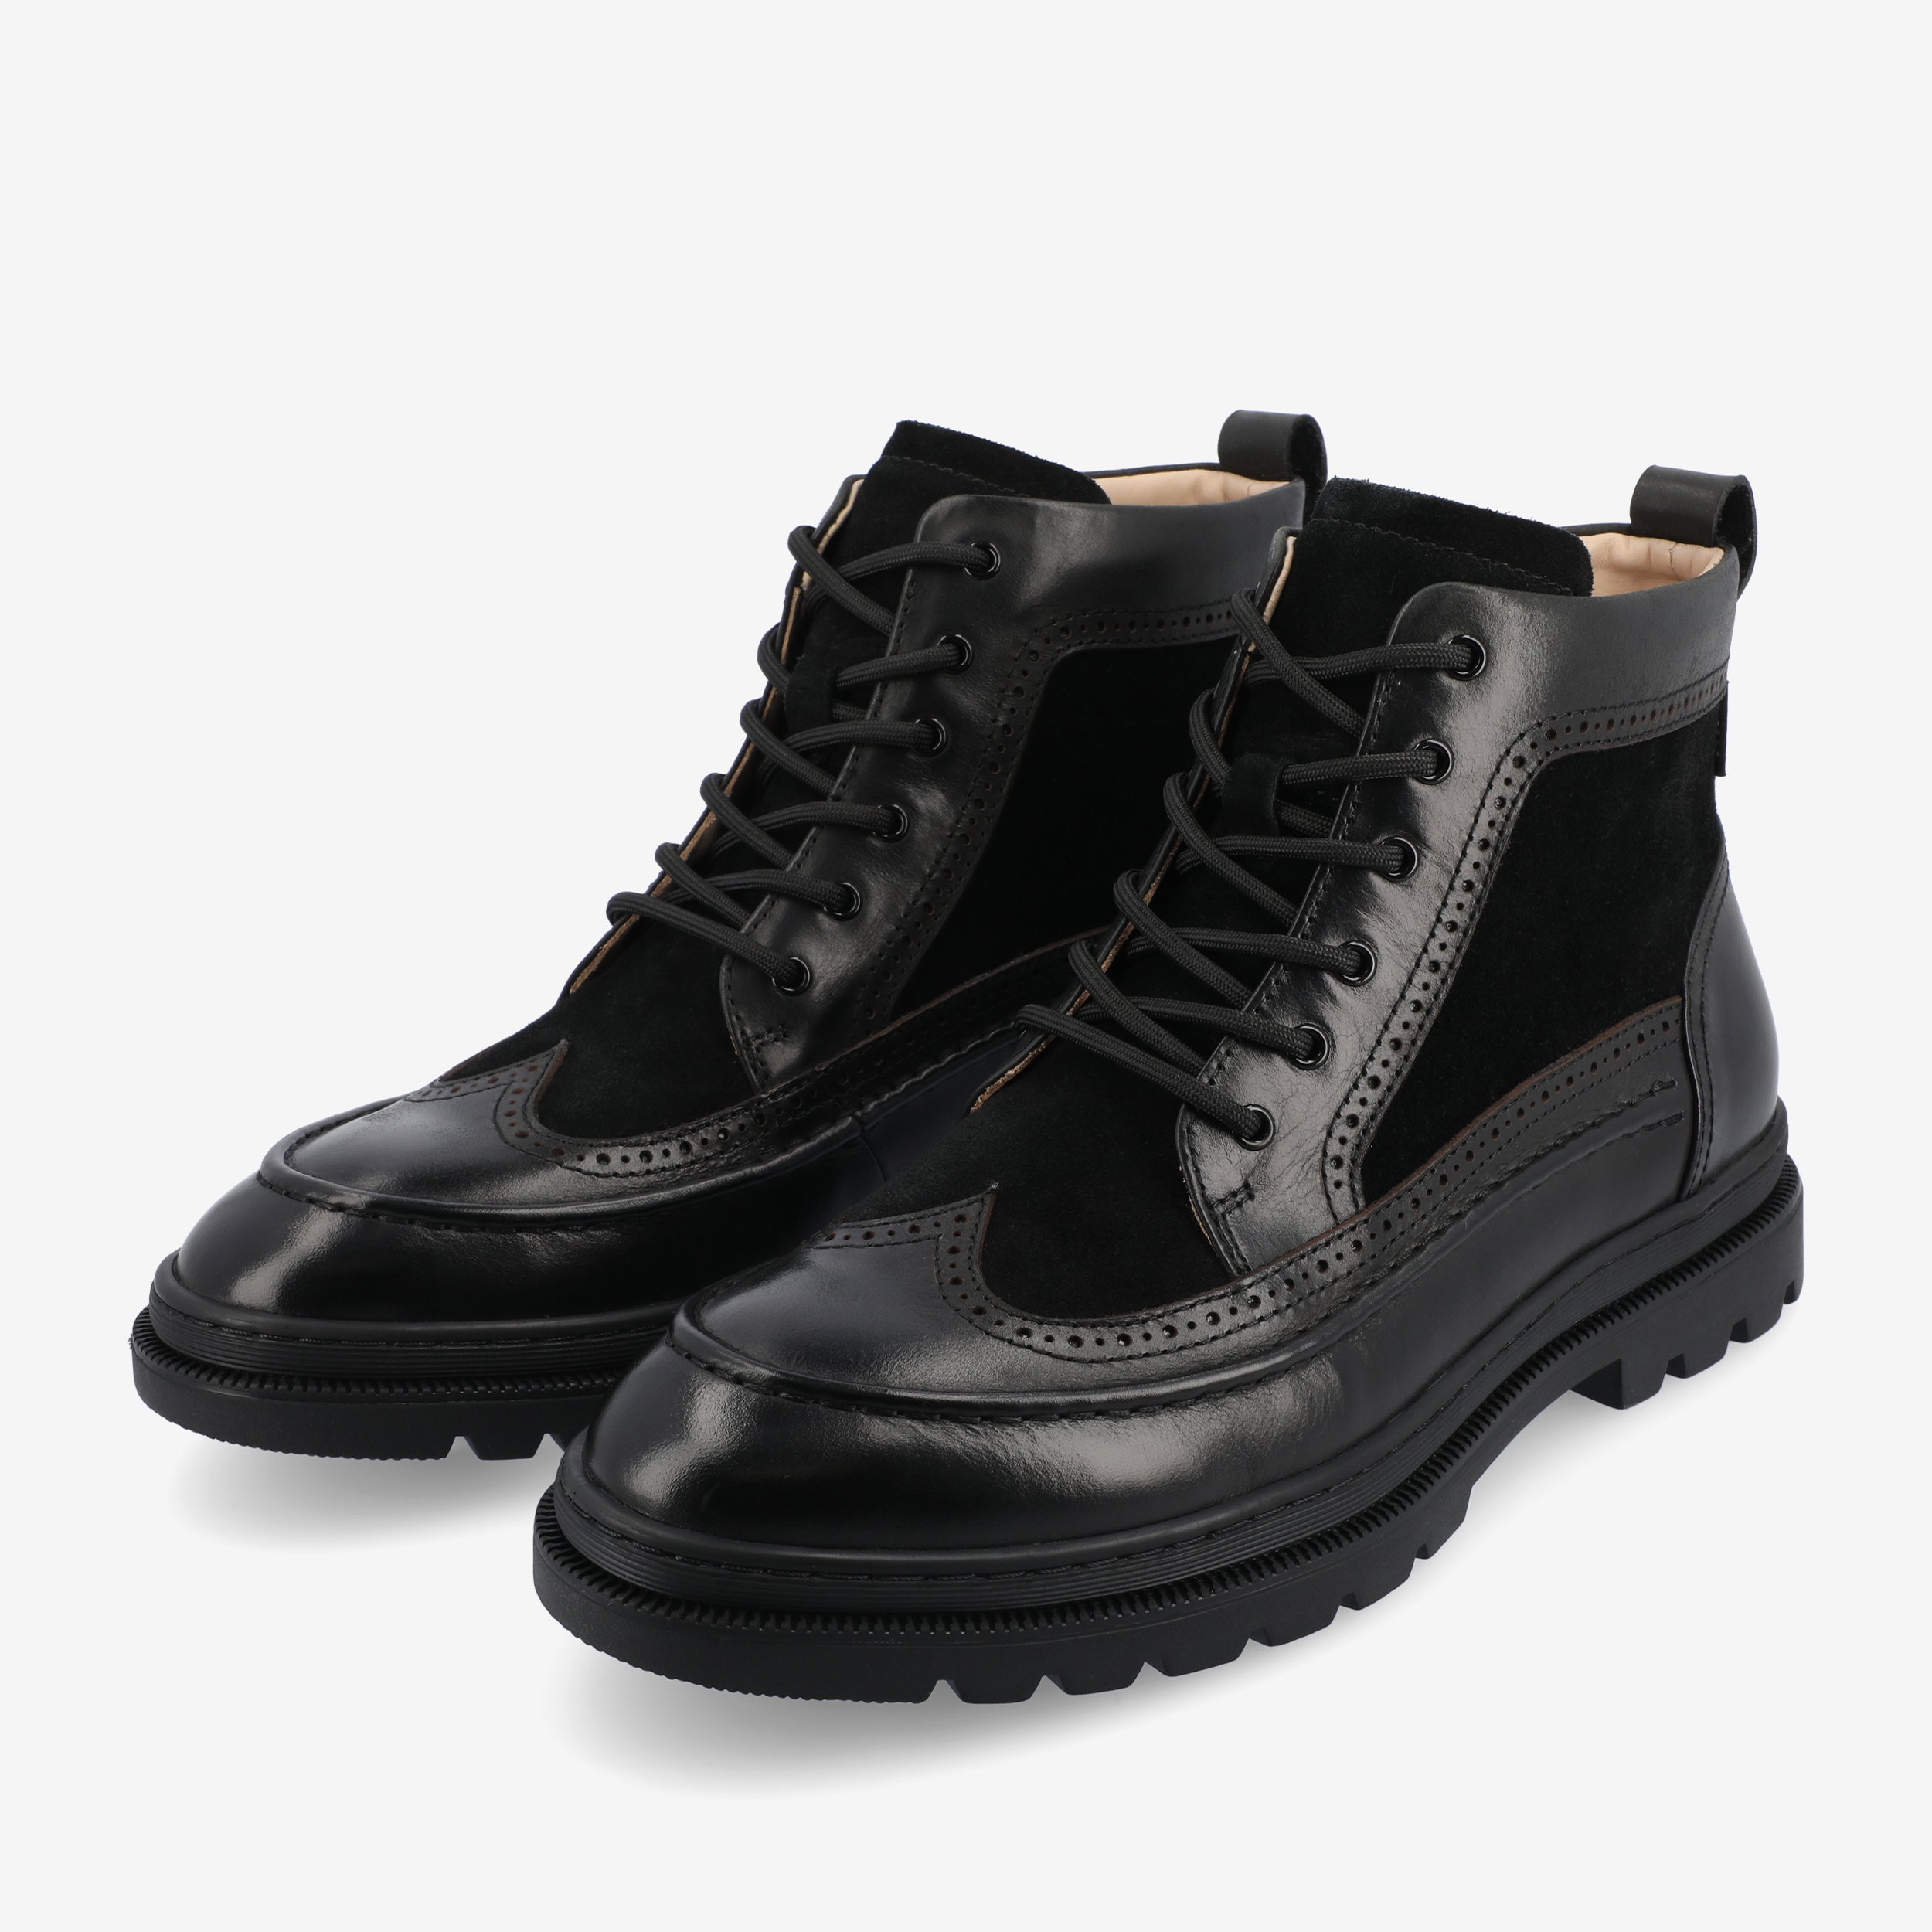 Model 008 Boot In Black (Final Sale)